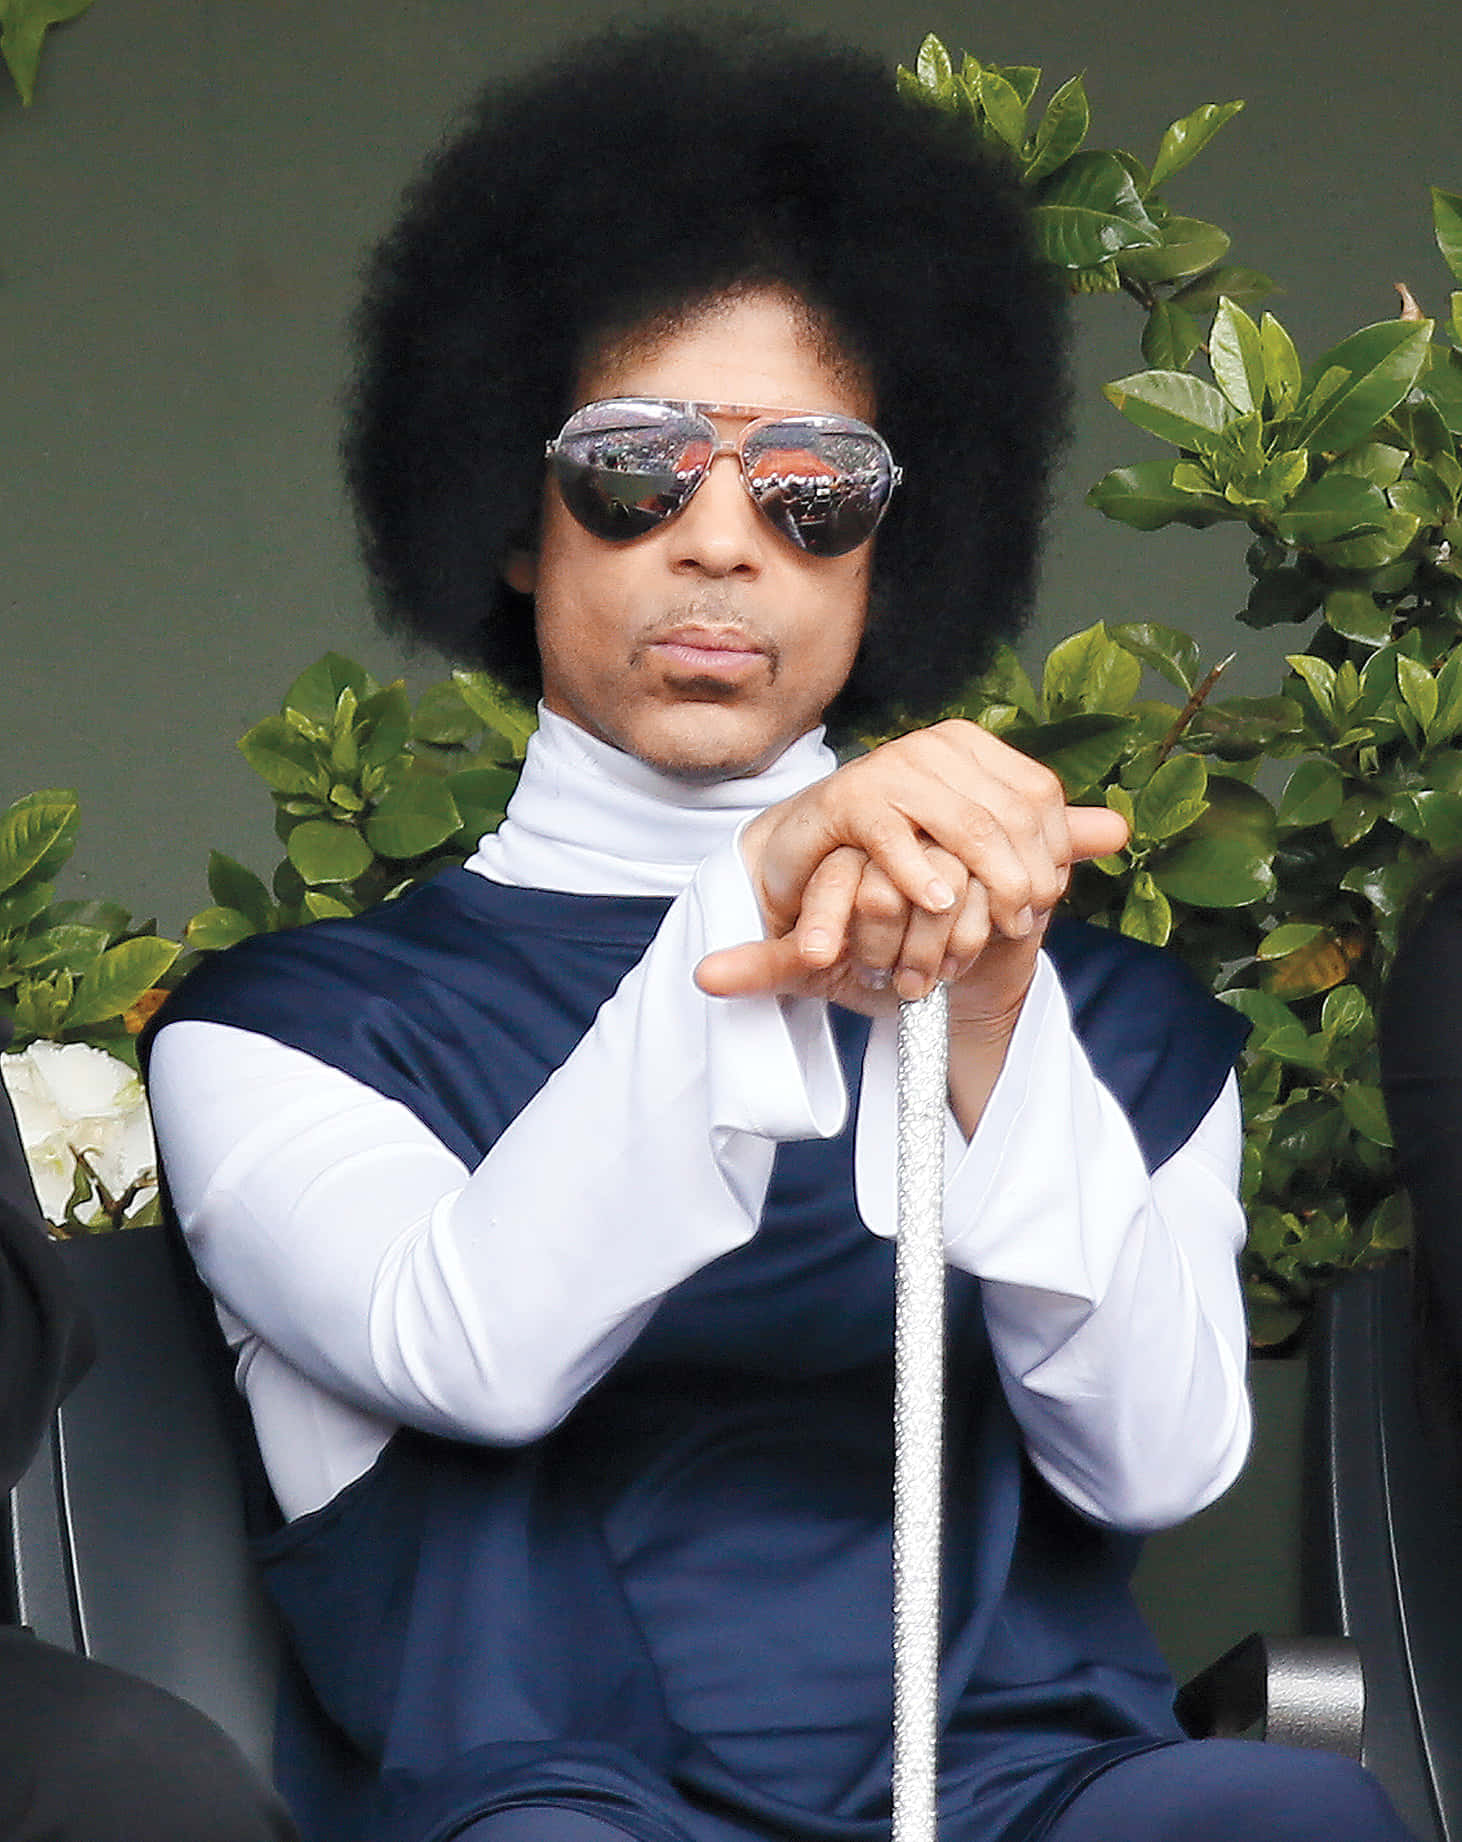 Derlegendäre Künstler Prince Bei Einem Konzert